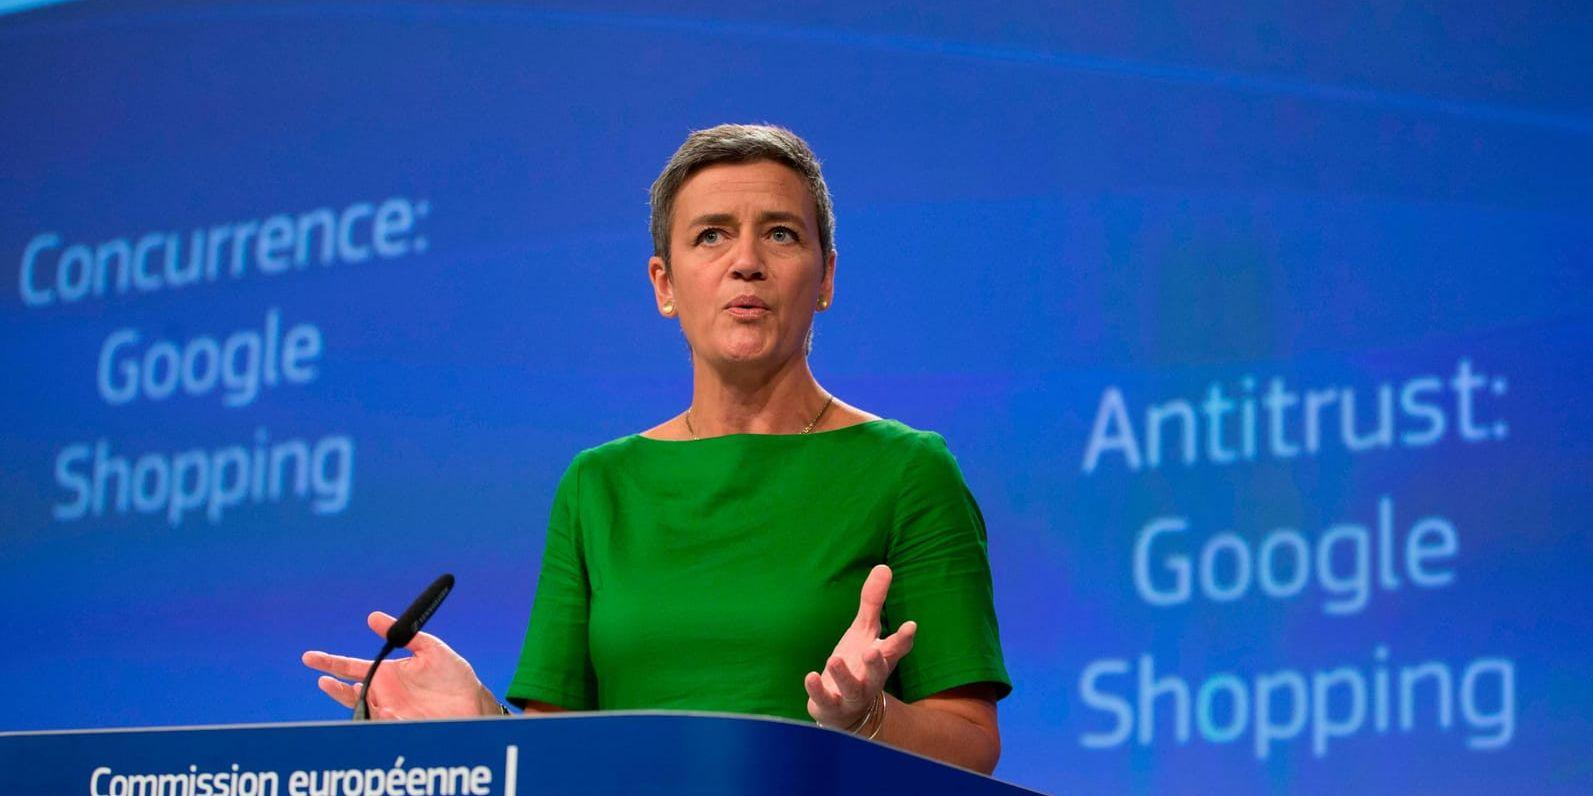 EU:s konkurrenskommissionär Margrethe Vestager sätter press på Google med historiens största företagsbot. Men än är inte fallet avgjort.